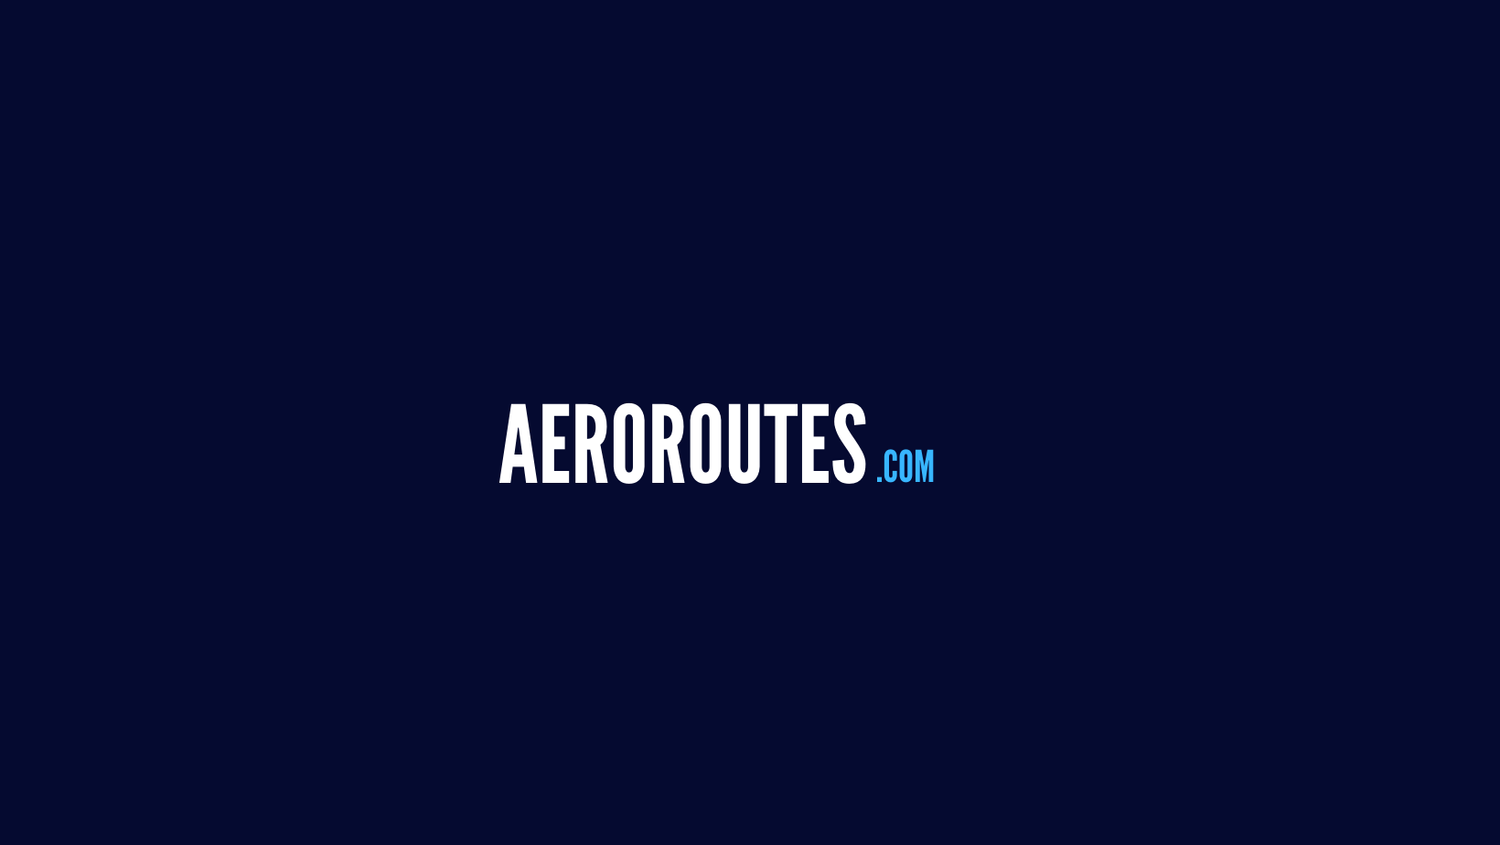 aeroroutes.com